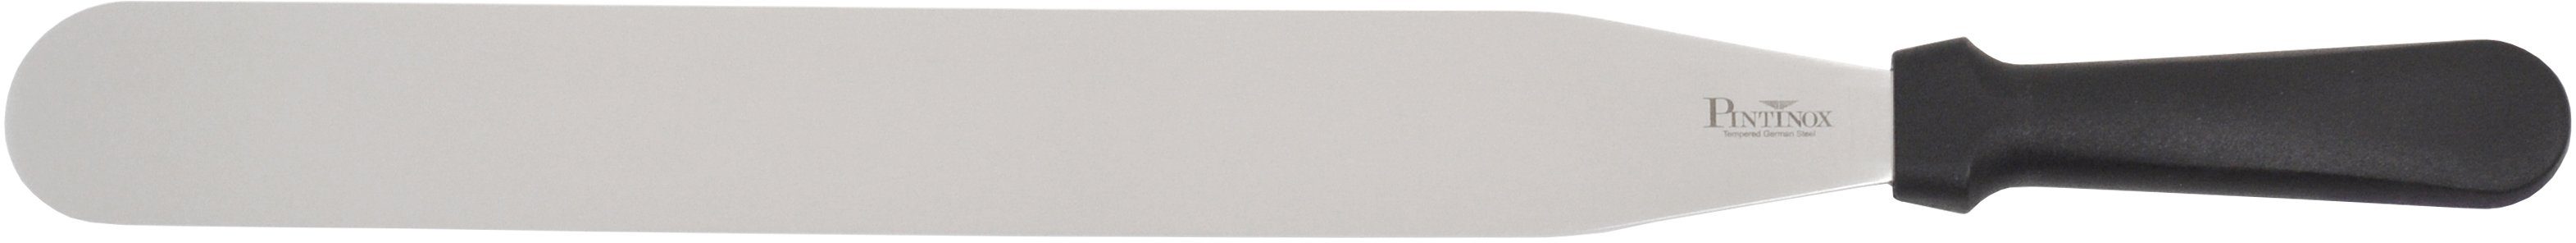 PINTINOX Streichpalette Professional, Edelstahl, spülmaschinengeeignet, Lg. 35,5 cm